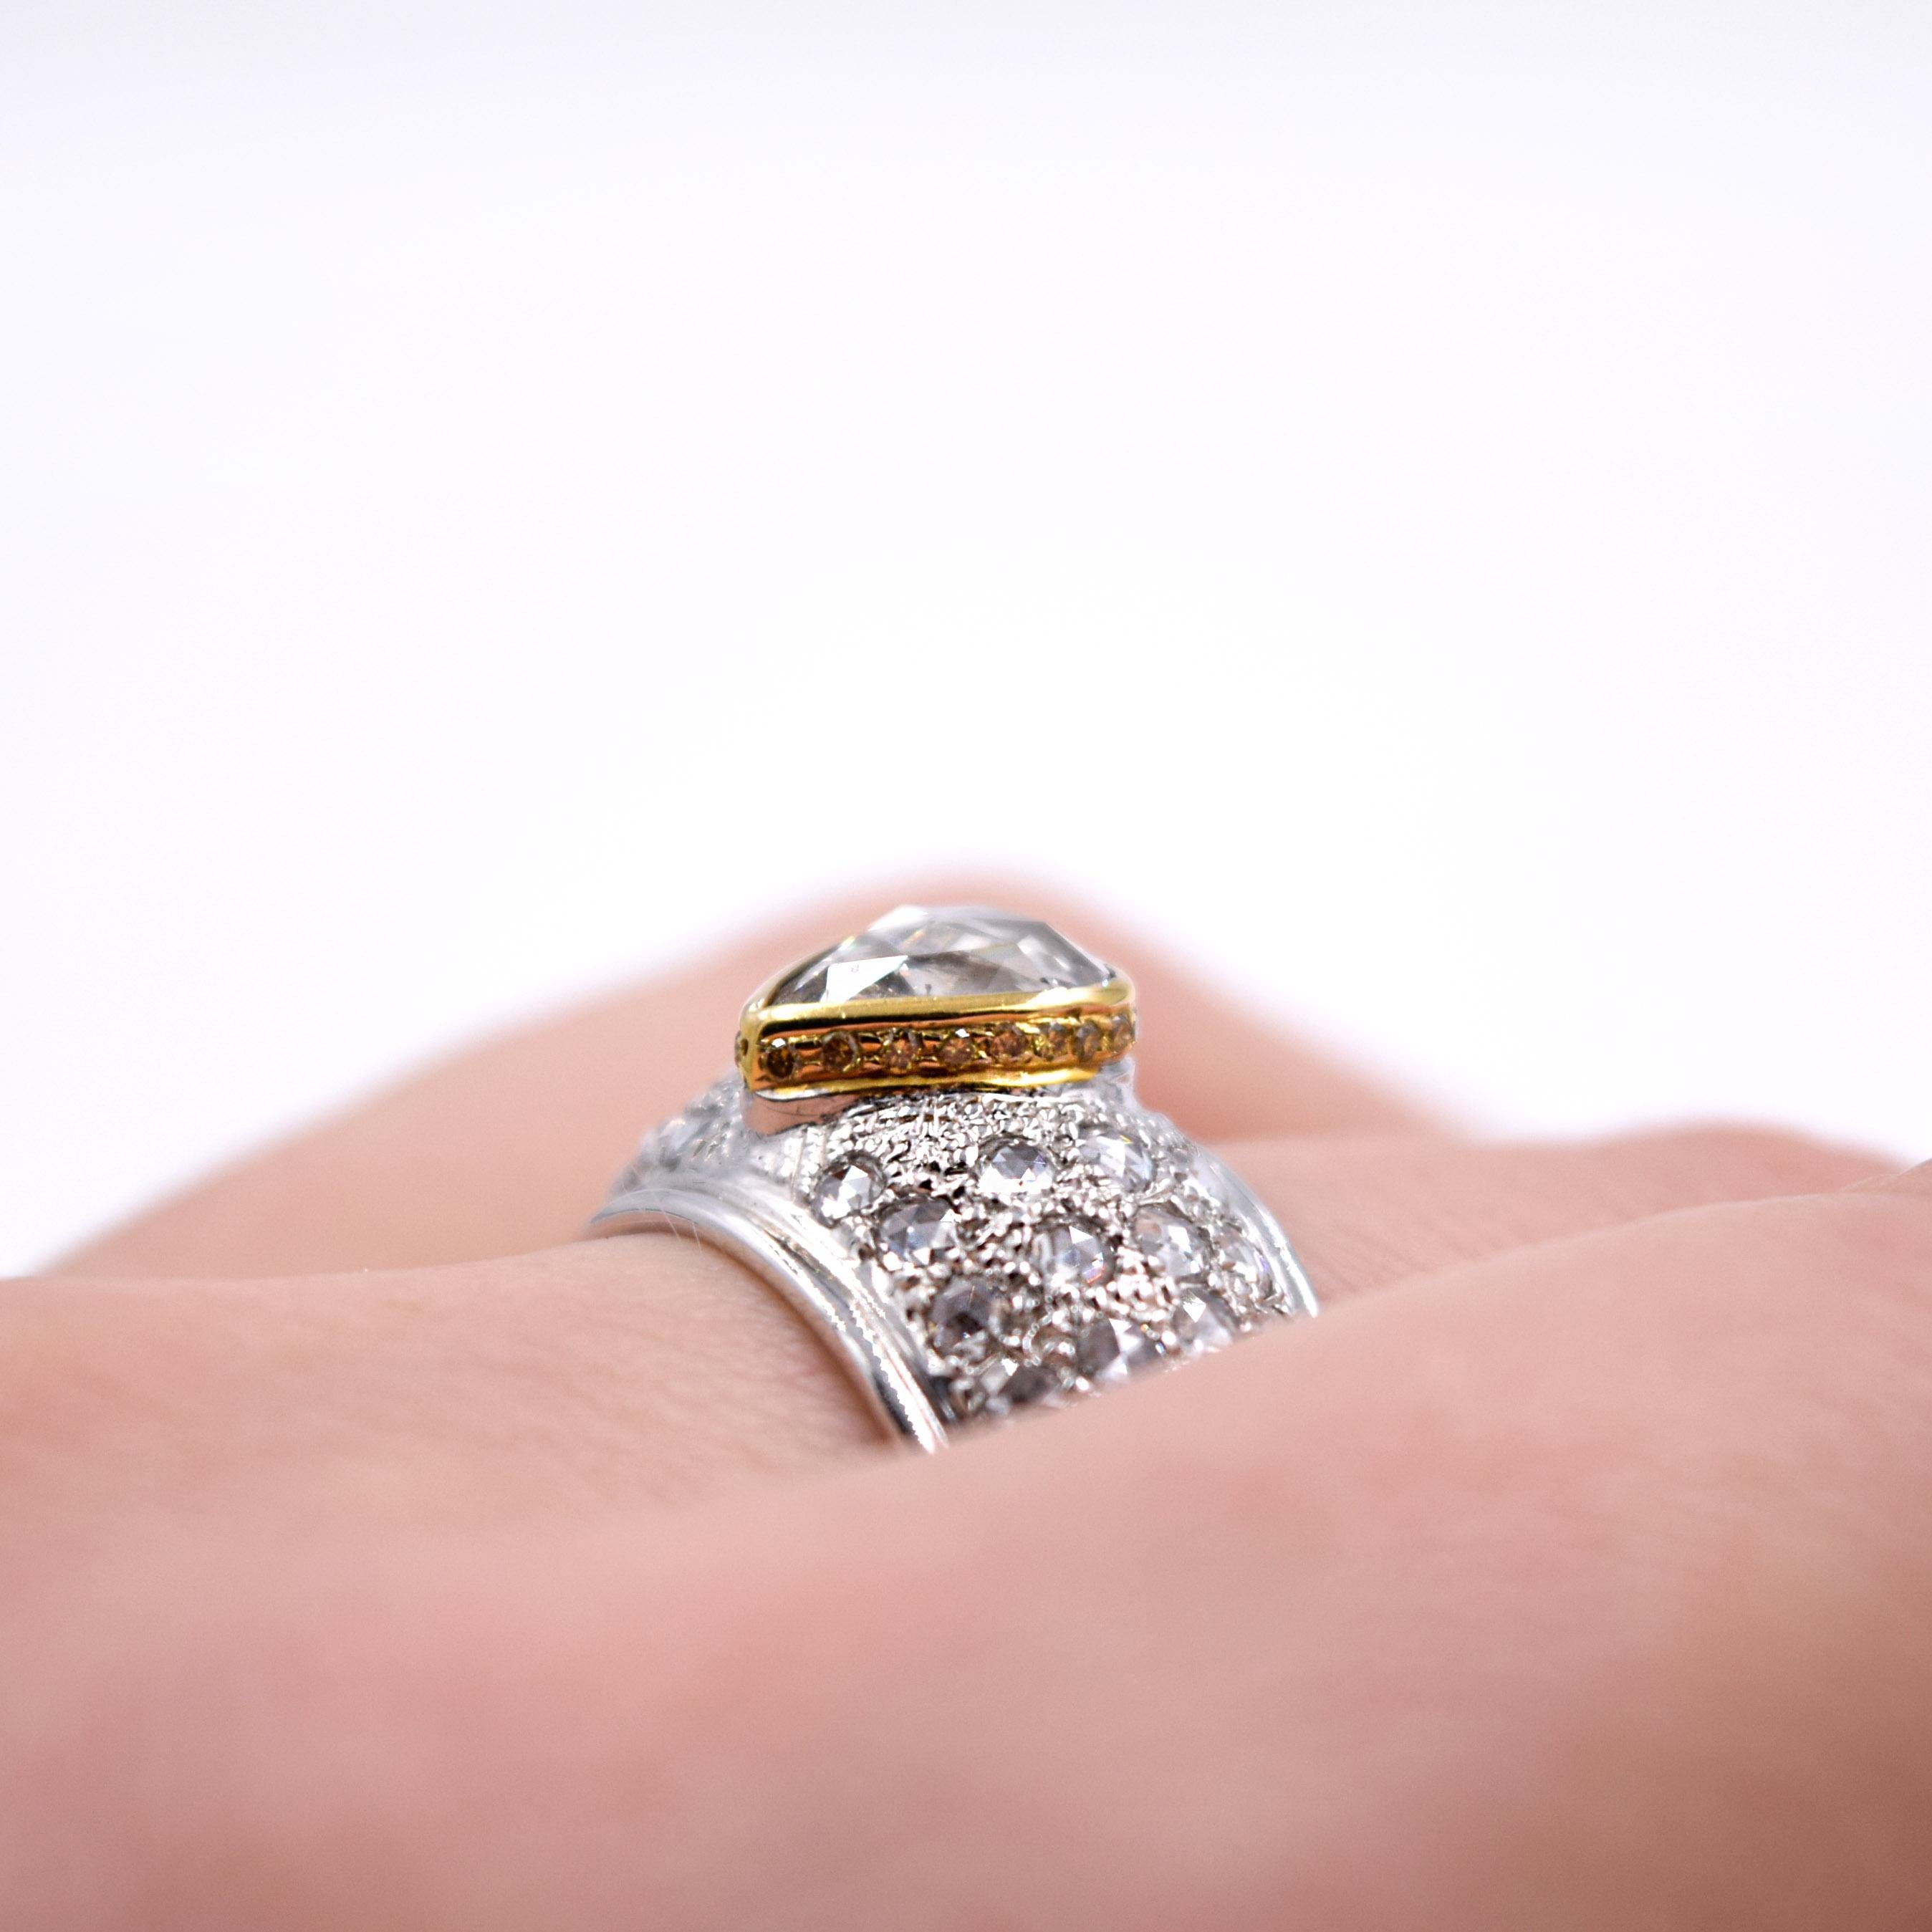 Sethi Couture 3.13 Carat Rose Cut Diamond Statement Ring in 18 Karat White Gold For Sale 3